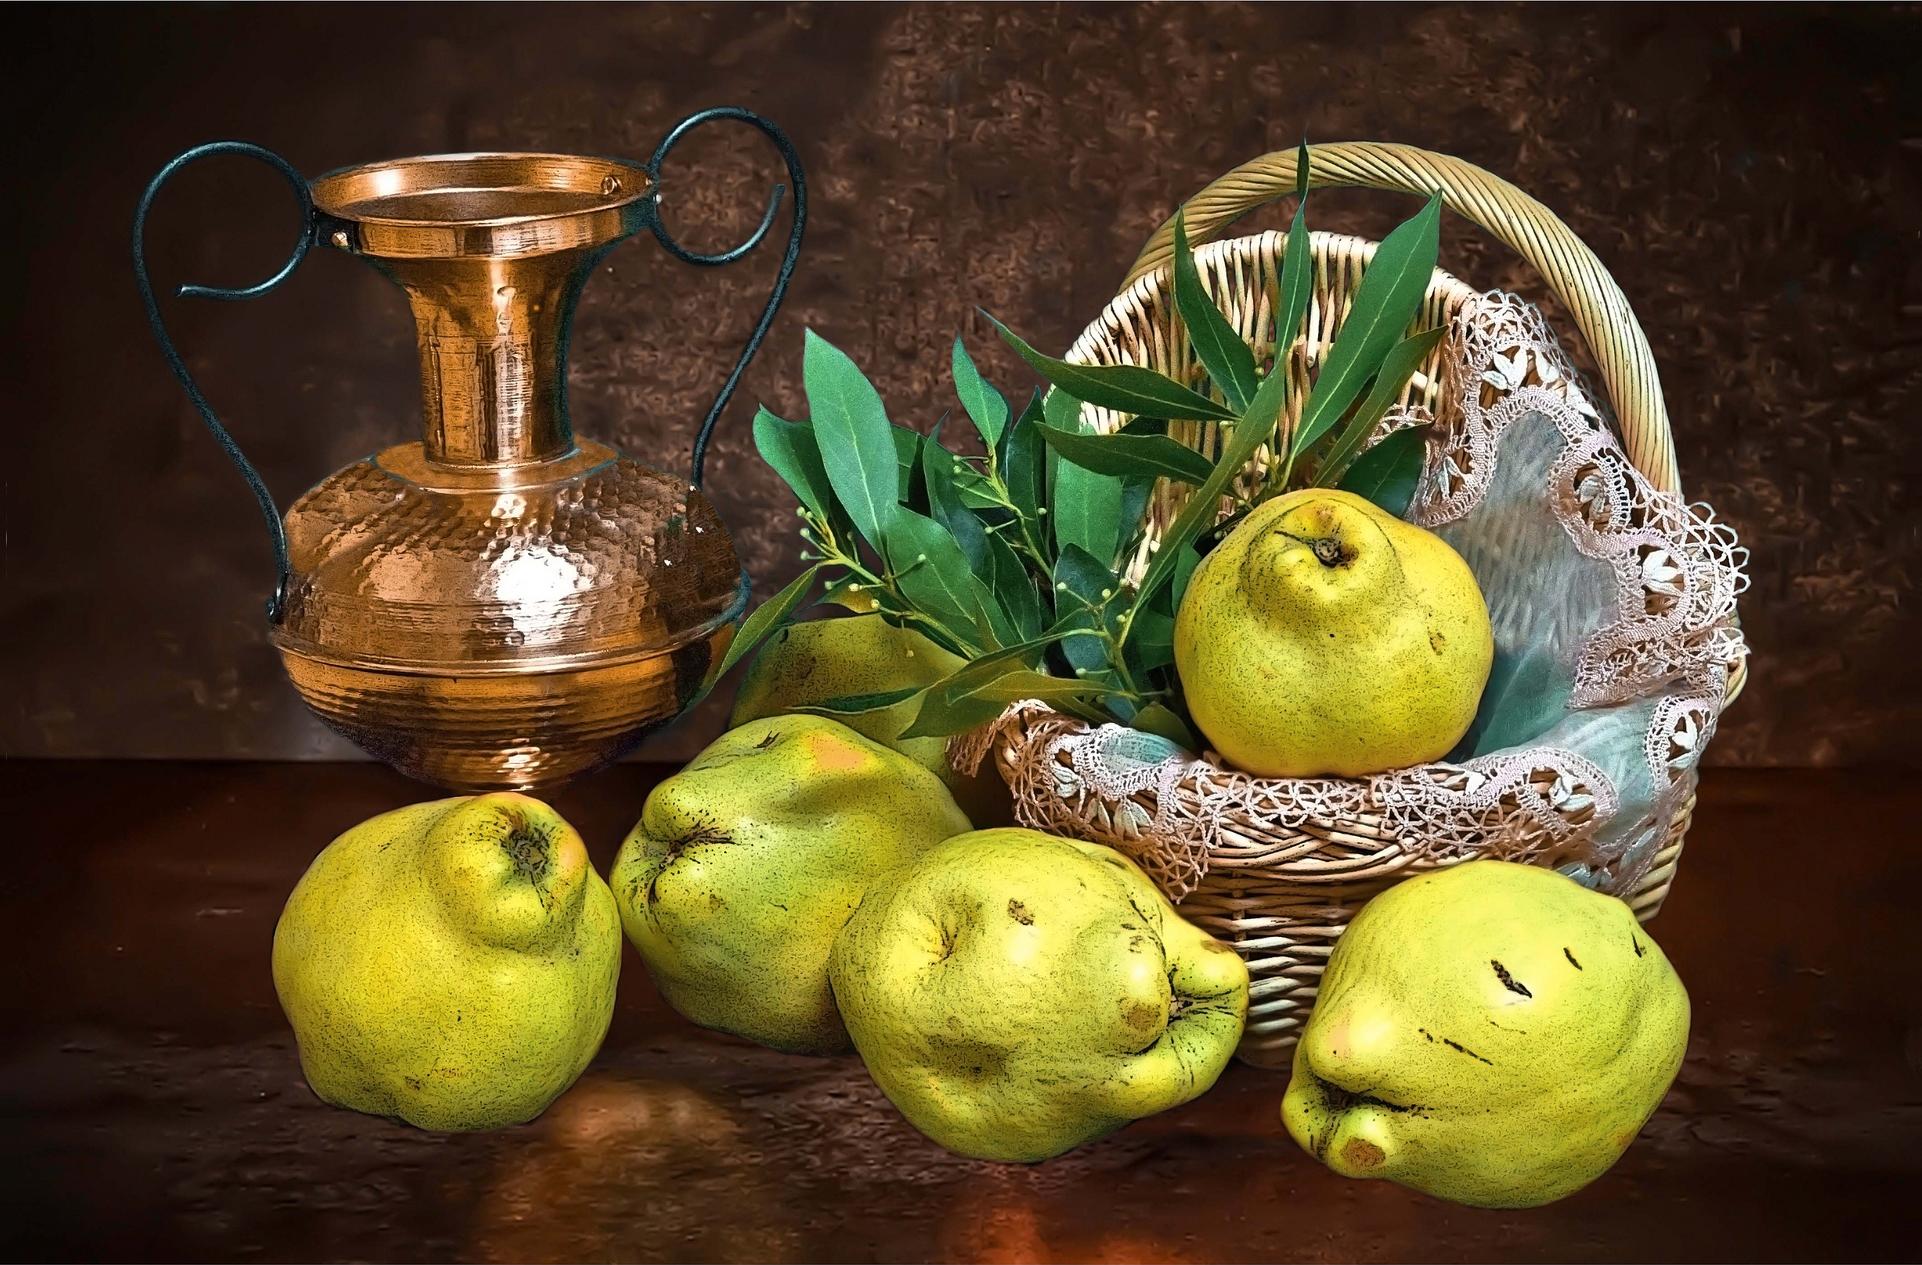 Wallpapers basket jug pears on the desktop